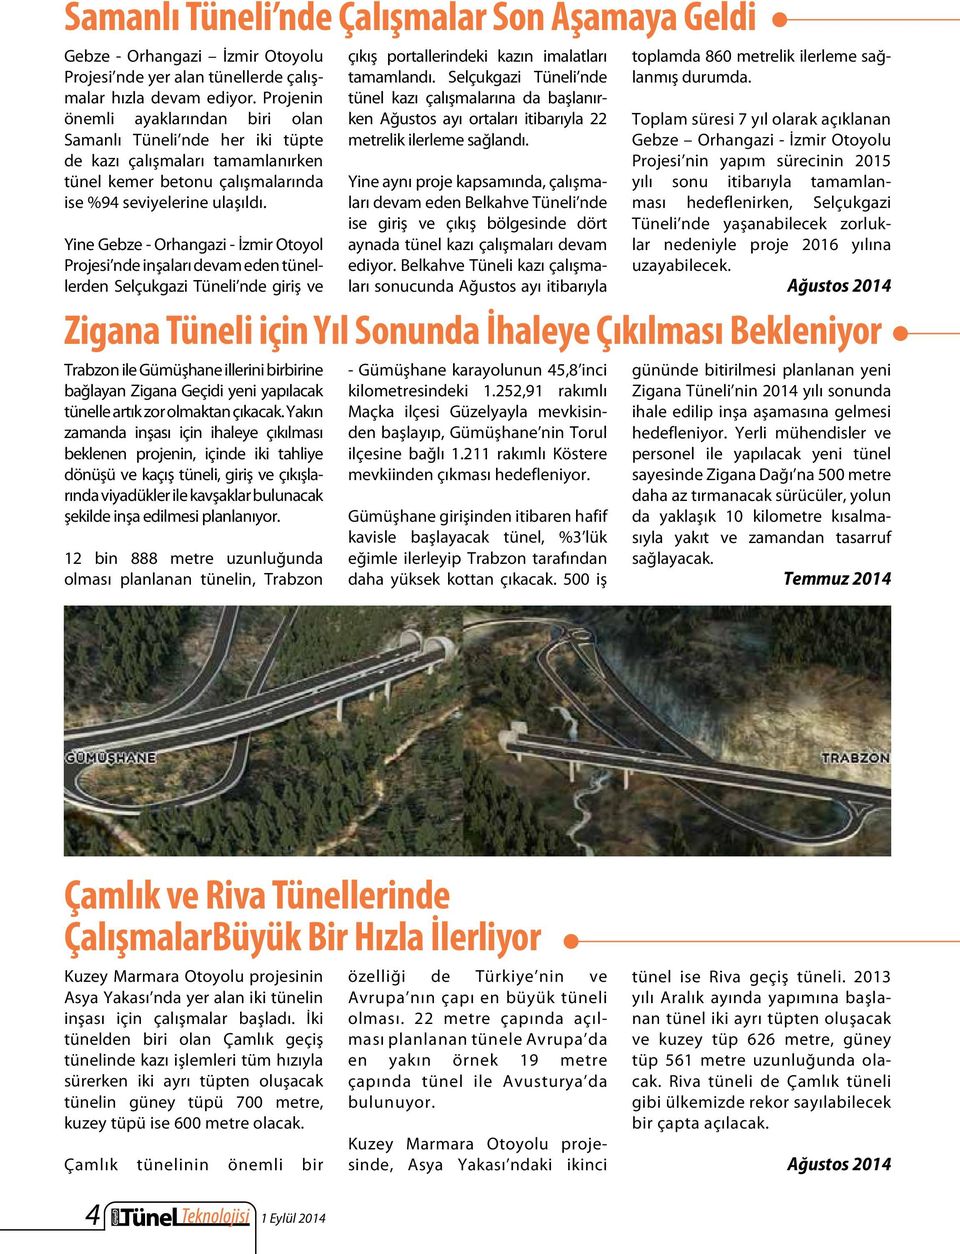 Yine Gebze - Orhangazi - İzmir Otoyol Projesi nde inşaları devam eden tünellerden Selçukgazi Tüneli nde giriş ve çıkış portallerindeki kazın imalatları tamamlandı.